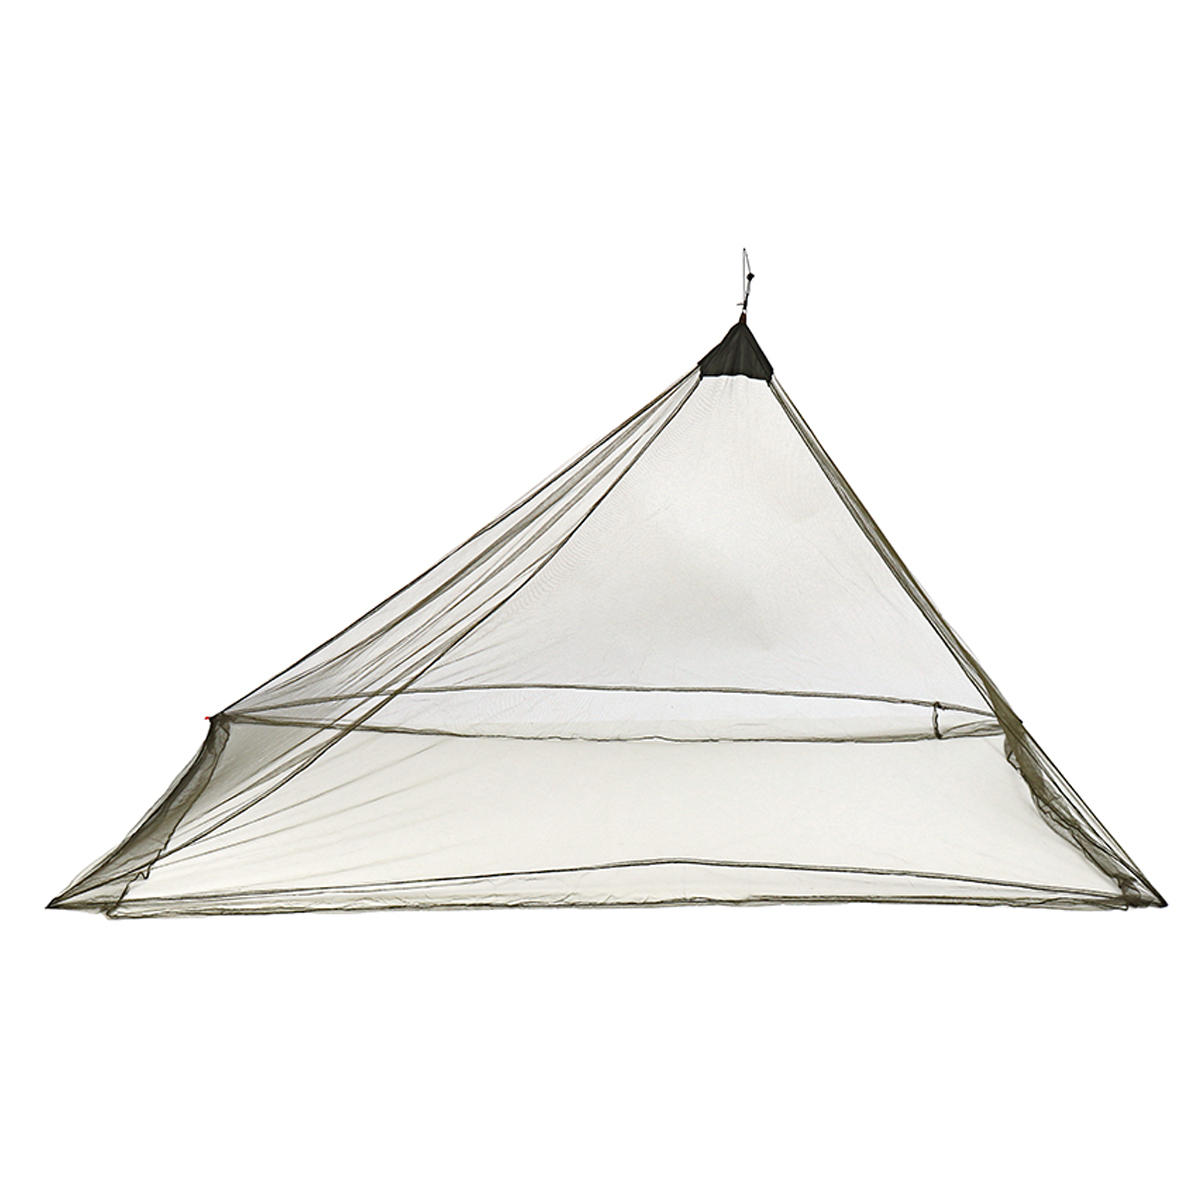 キャンプ用蚊帳、軽量ポータブル蚊帳、屋外用蚊帳、防蚊ネット。